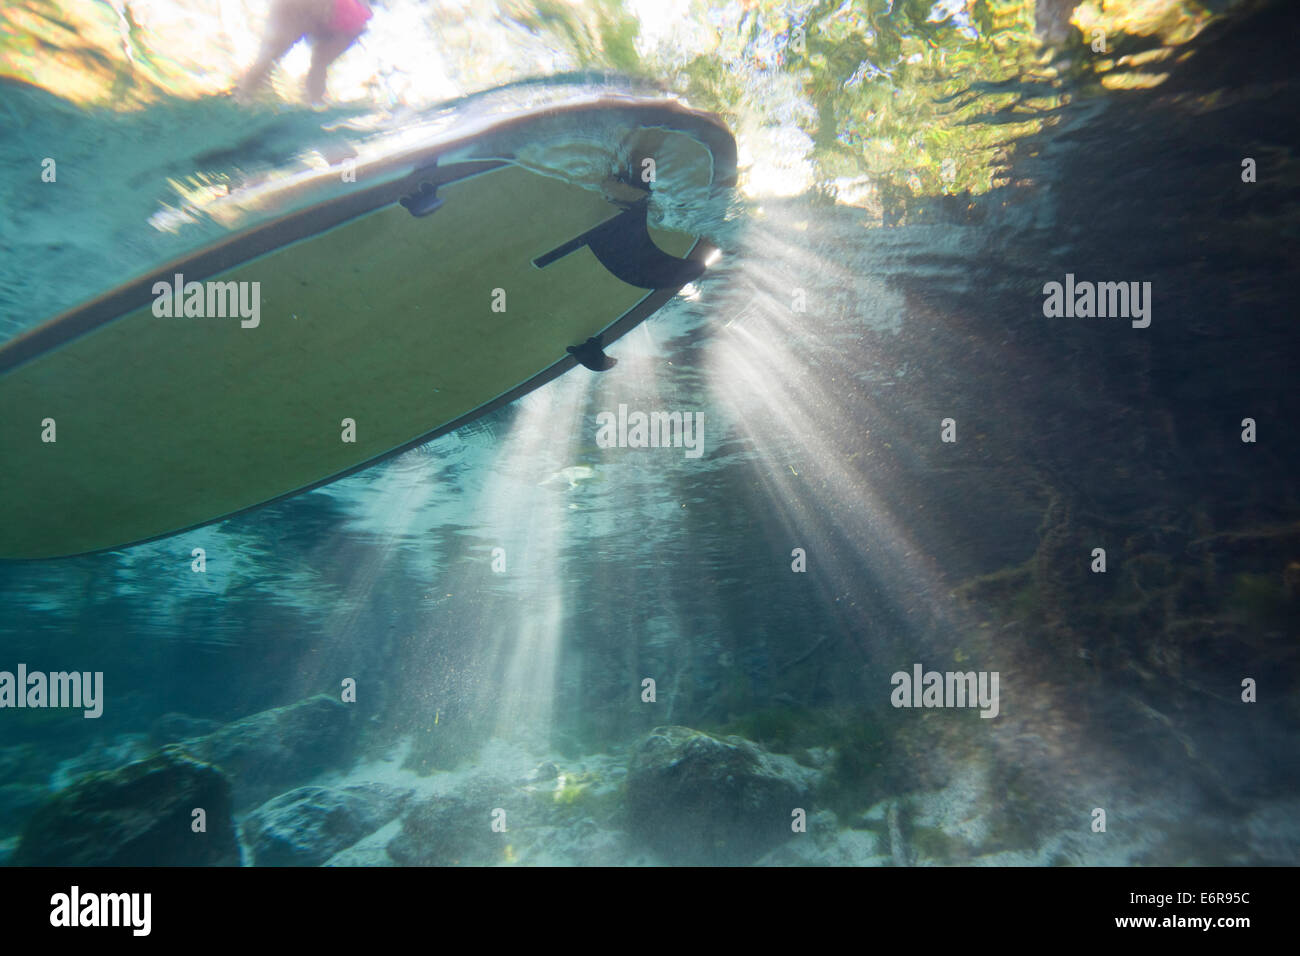 Imagen Submarina con el fotógrafo mirando hacia el stand up paddle board en la superficie en agua cristalina Foto de stock